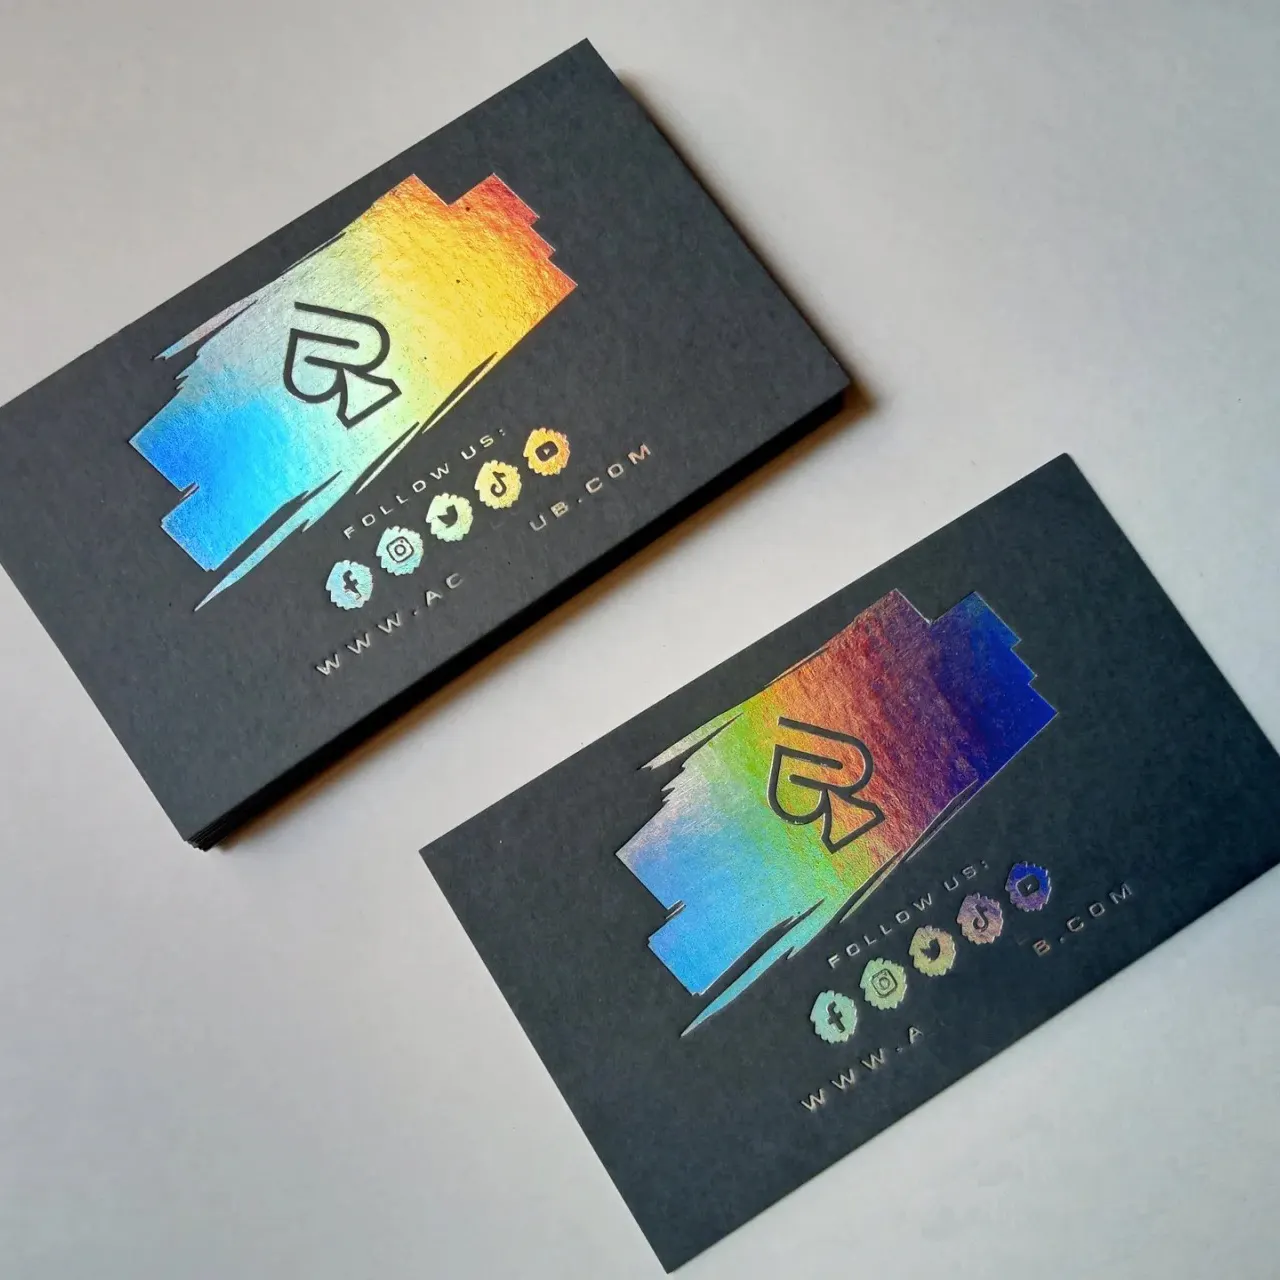 Atacado pequeno negócio visitando cartão personalizado obrigado por sua ordem cartão em relevo arco-íris folha cartão impressora